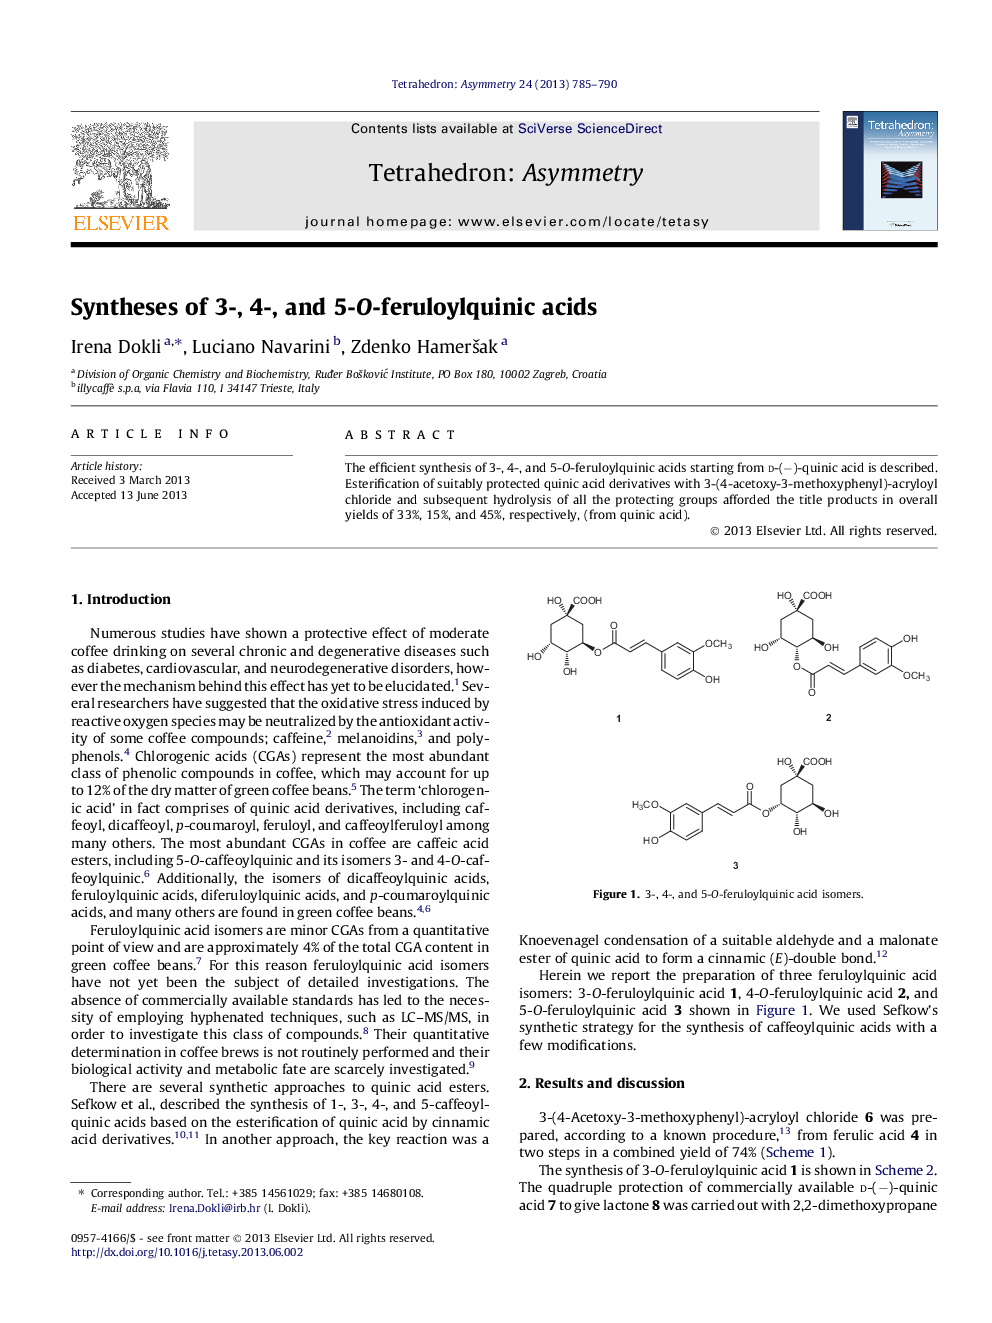 Syntheses of 3-, 4-, and 5-O-feruloylquinic acids